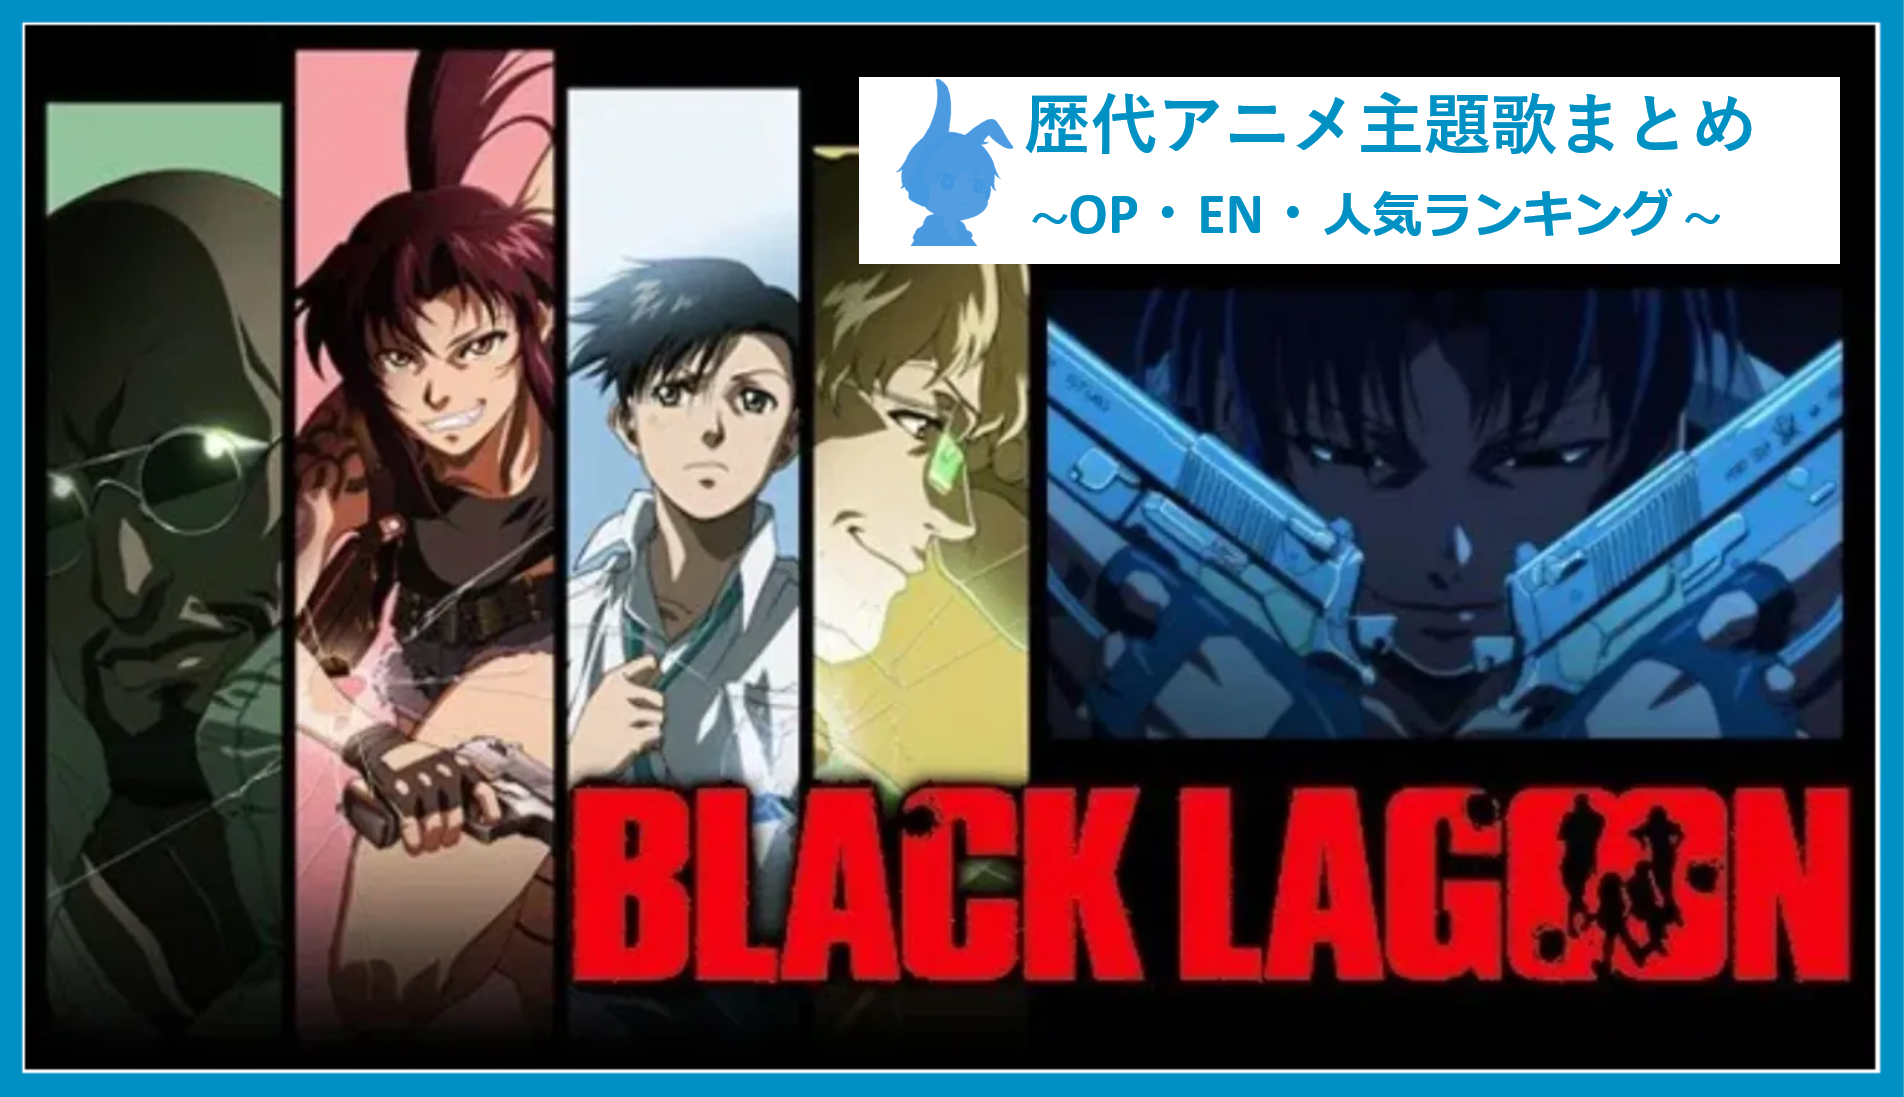 Black Lagoon 歴代アニメ主題歌 Op En 全 4 曲 まとめ ランキング アニソンライブラリー